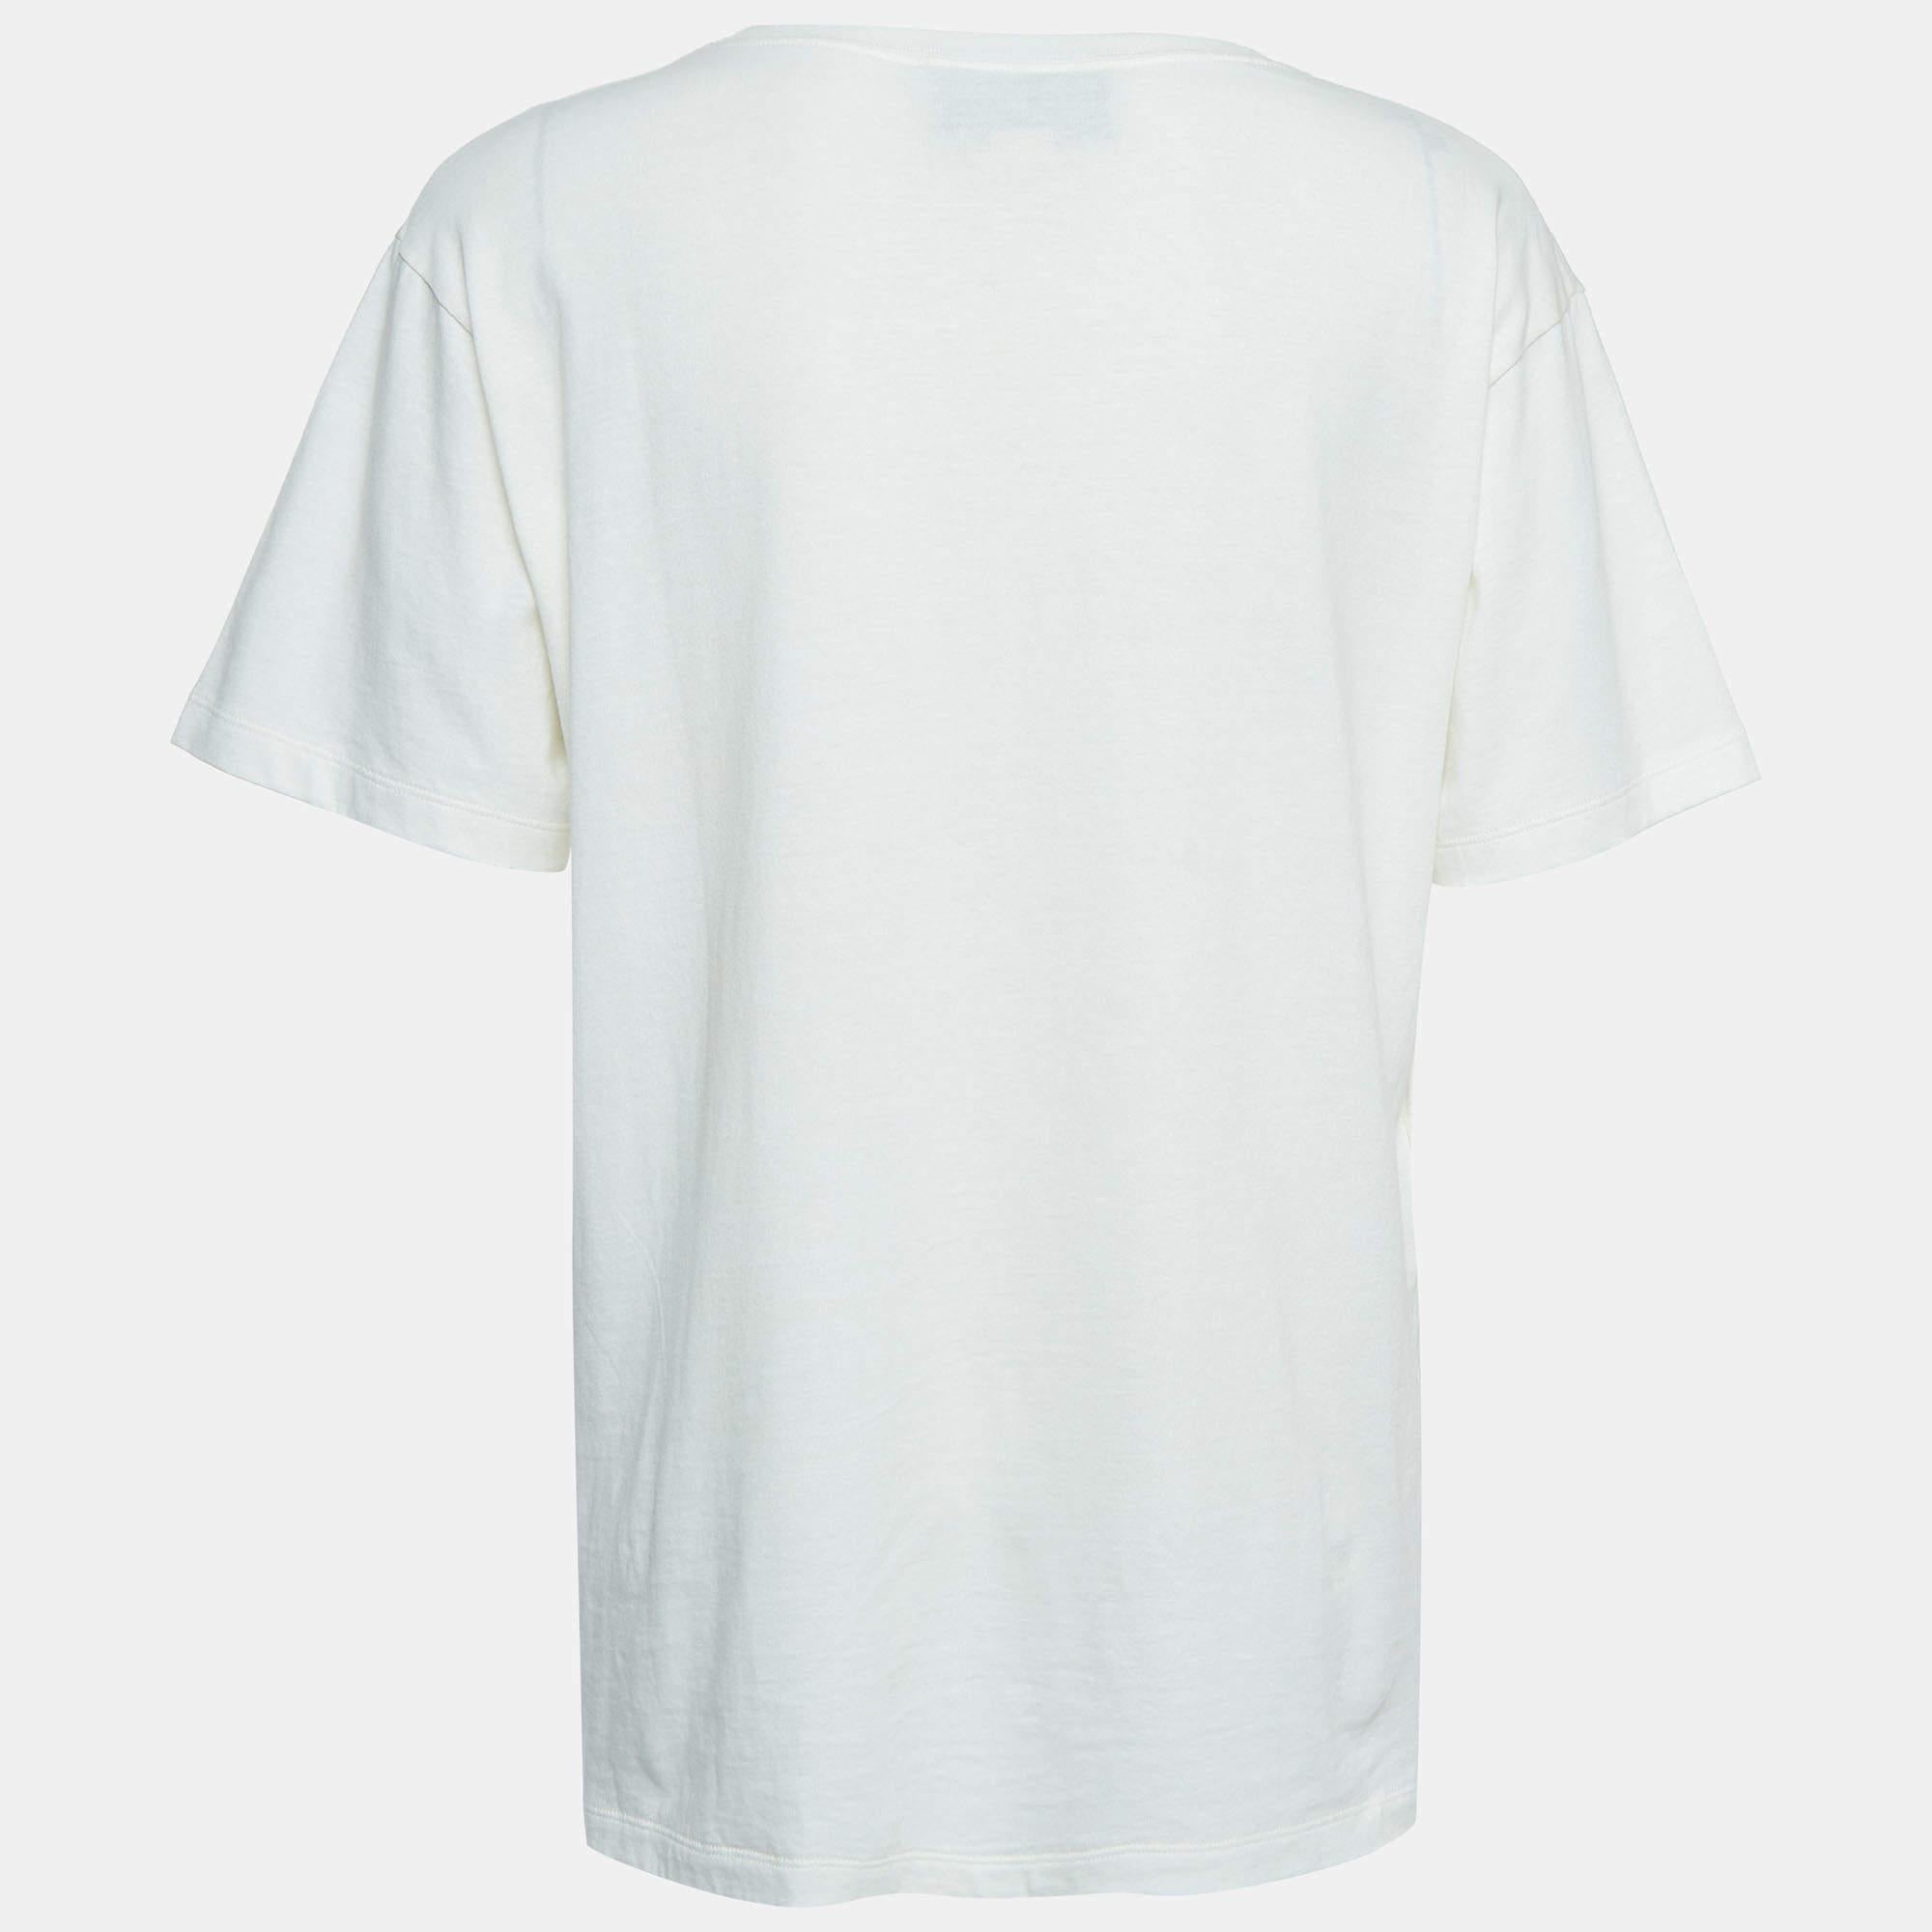 Dieses T-Shirt eignet sich perfekt für lässige Ausflüge oder Besorgungen und ist das beste Stück, um sich darin wohl zu fühlen und stilvoll zu sein. Es hat einen auffälligen Farbton und eine lockere Passform.

